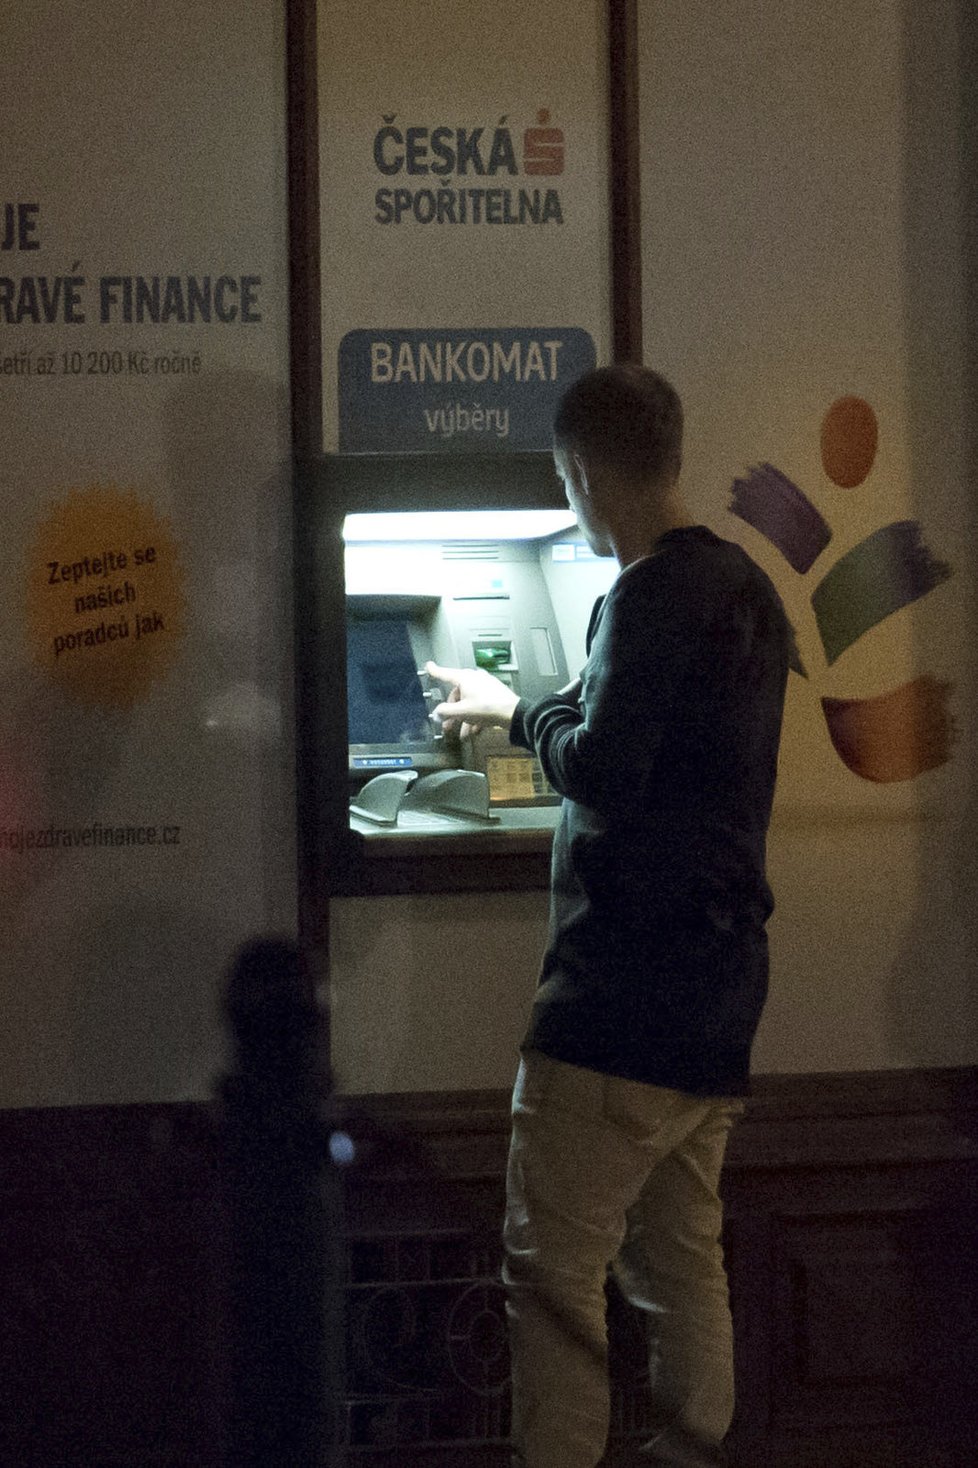 Prachařovi došly peníze, tak zašel k bankomatu, kde měl problém vyťukat PIN. Trvalo mu to dvacet minut.